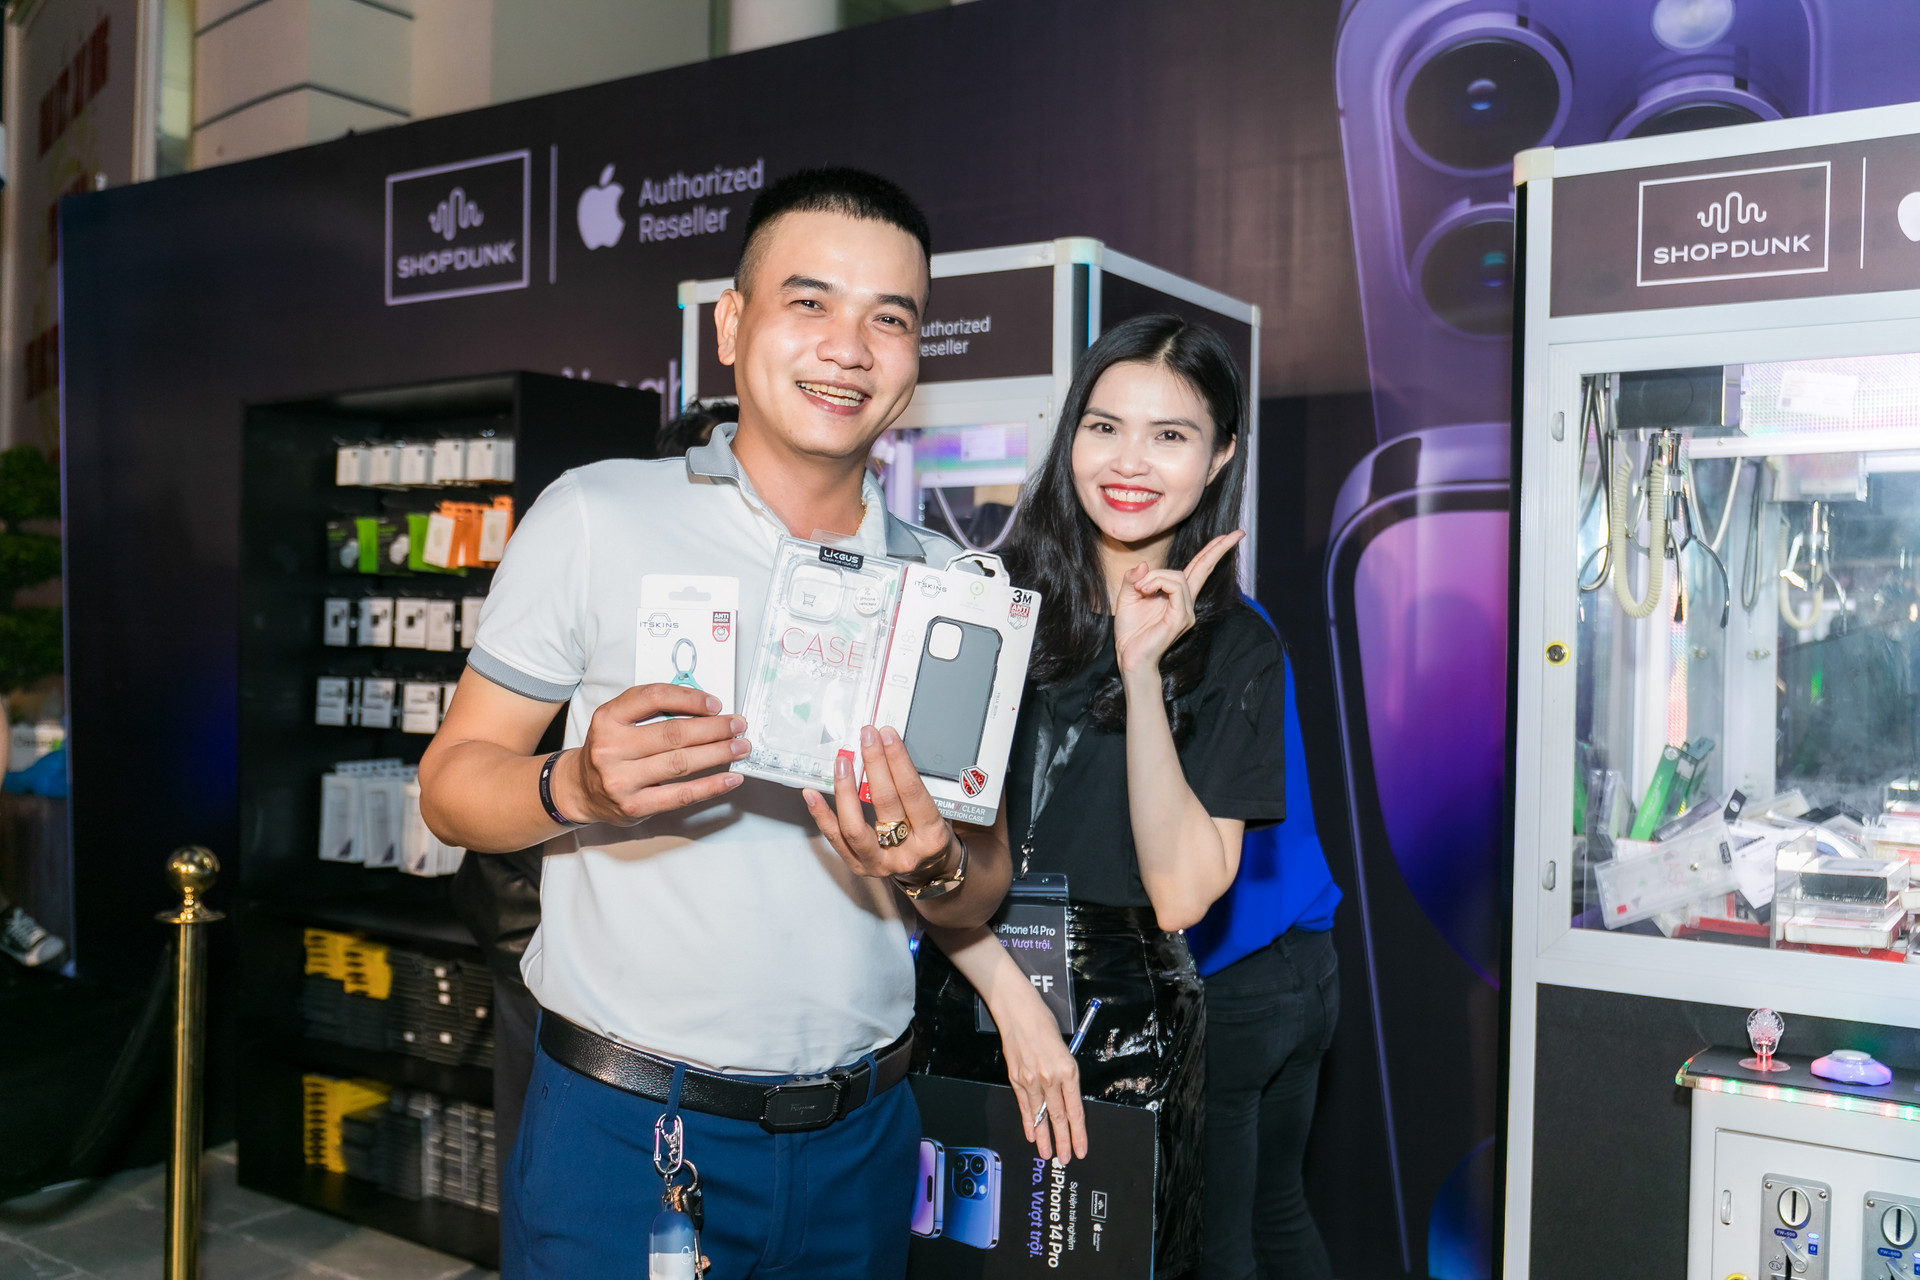 CEO ShopDunk Dũng Đoàn: Người Việt yêu Apple nhưng chưa được hồi đáp xứng đáng - Ảnh 5.